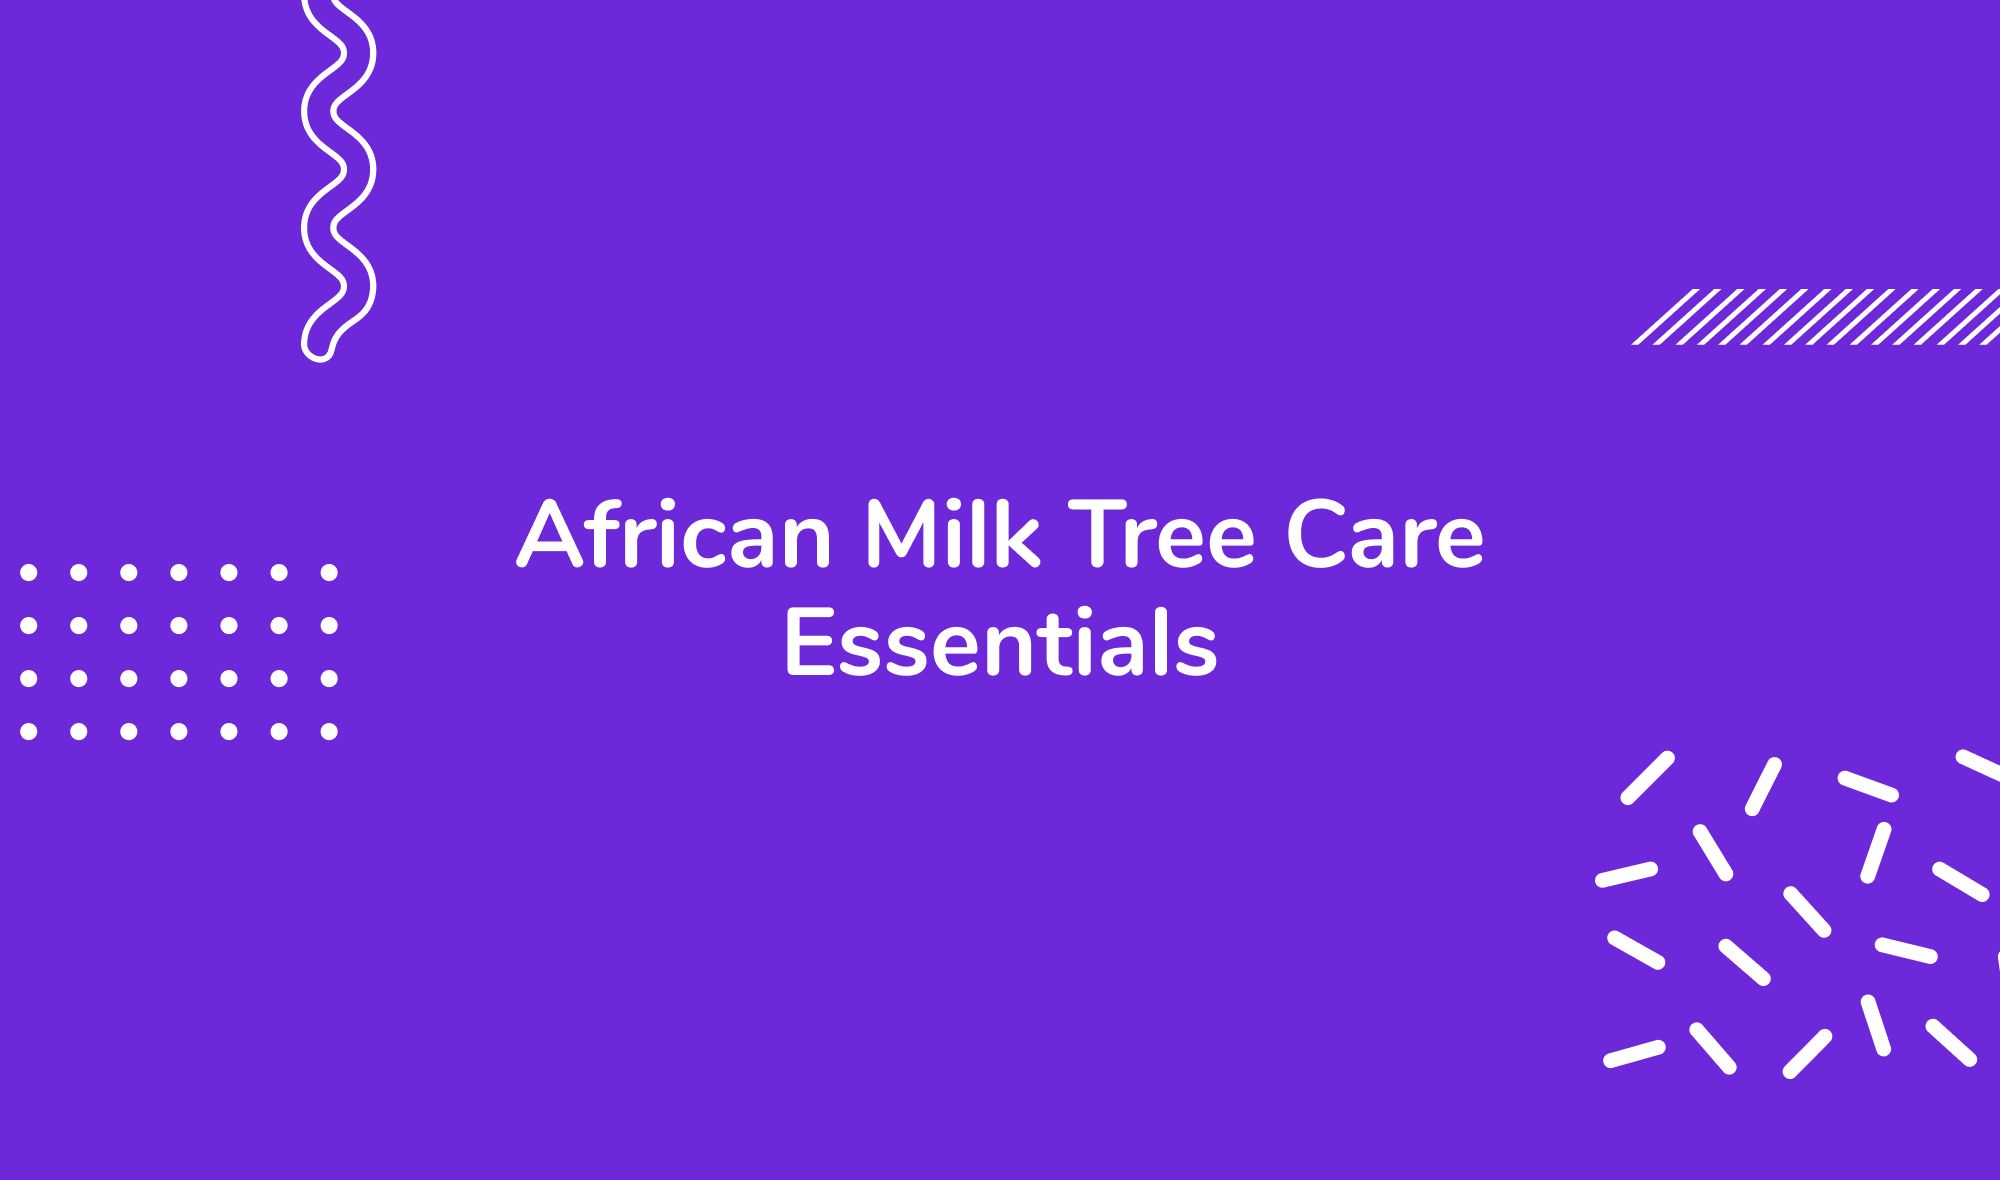 African Milk Tree Care Essentials